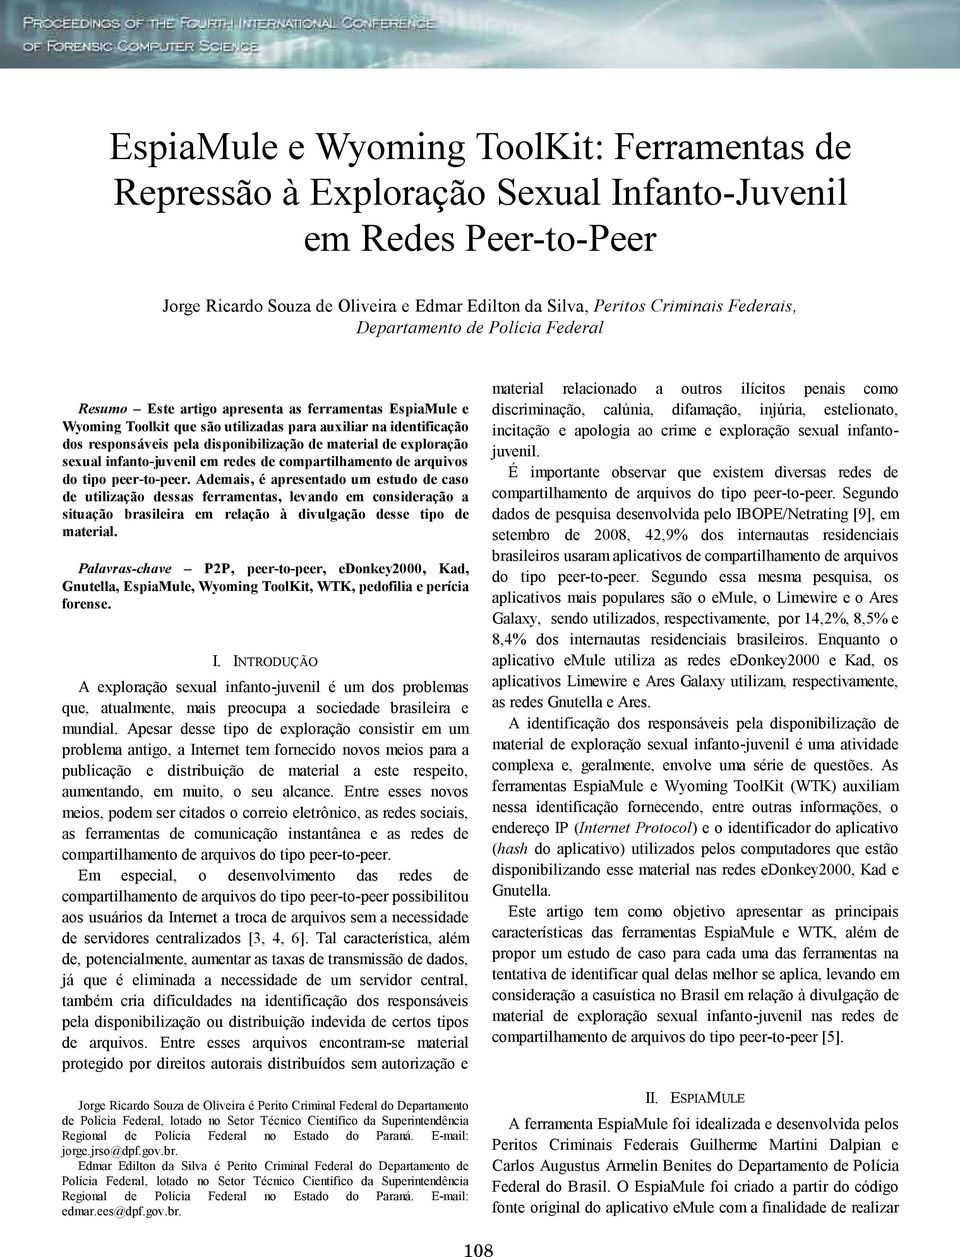 material de exploração sexual infanto-juvenil em redes de compartilhamento de arquivos do tipo peer-to-peer.